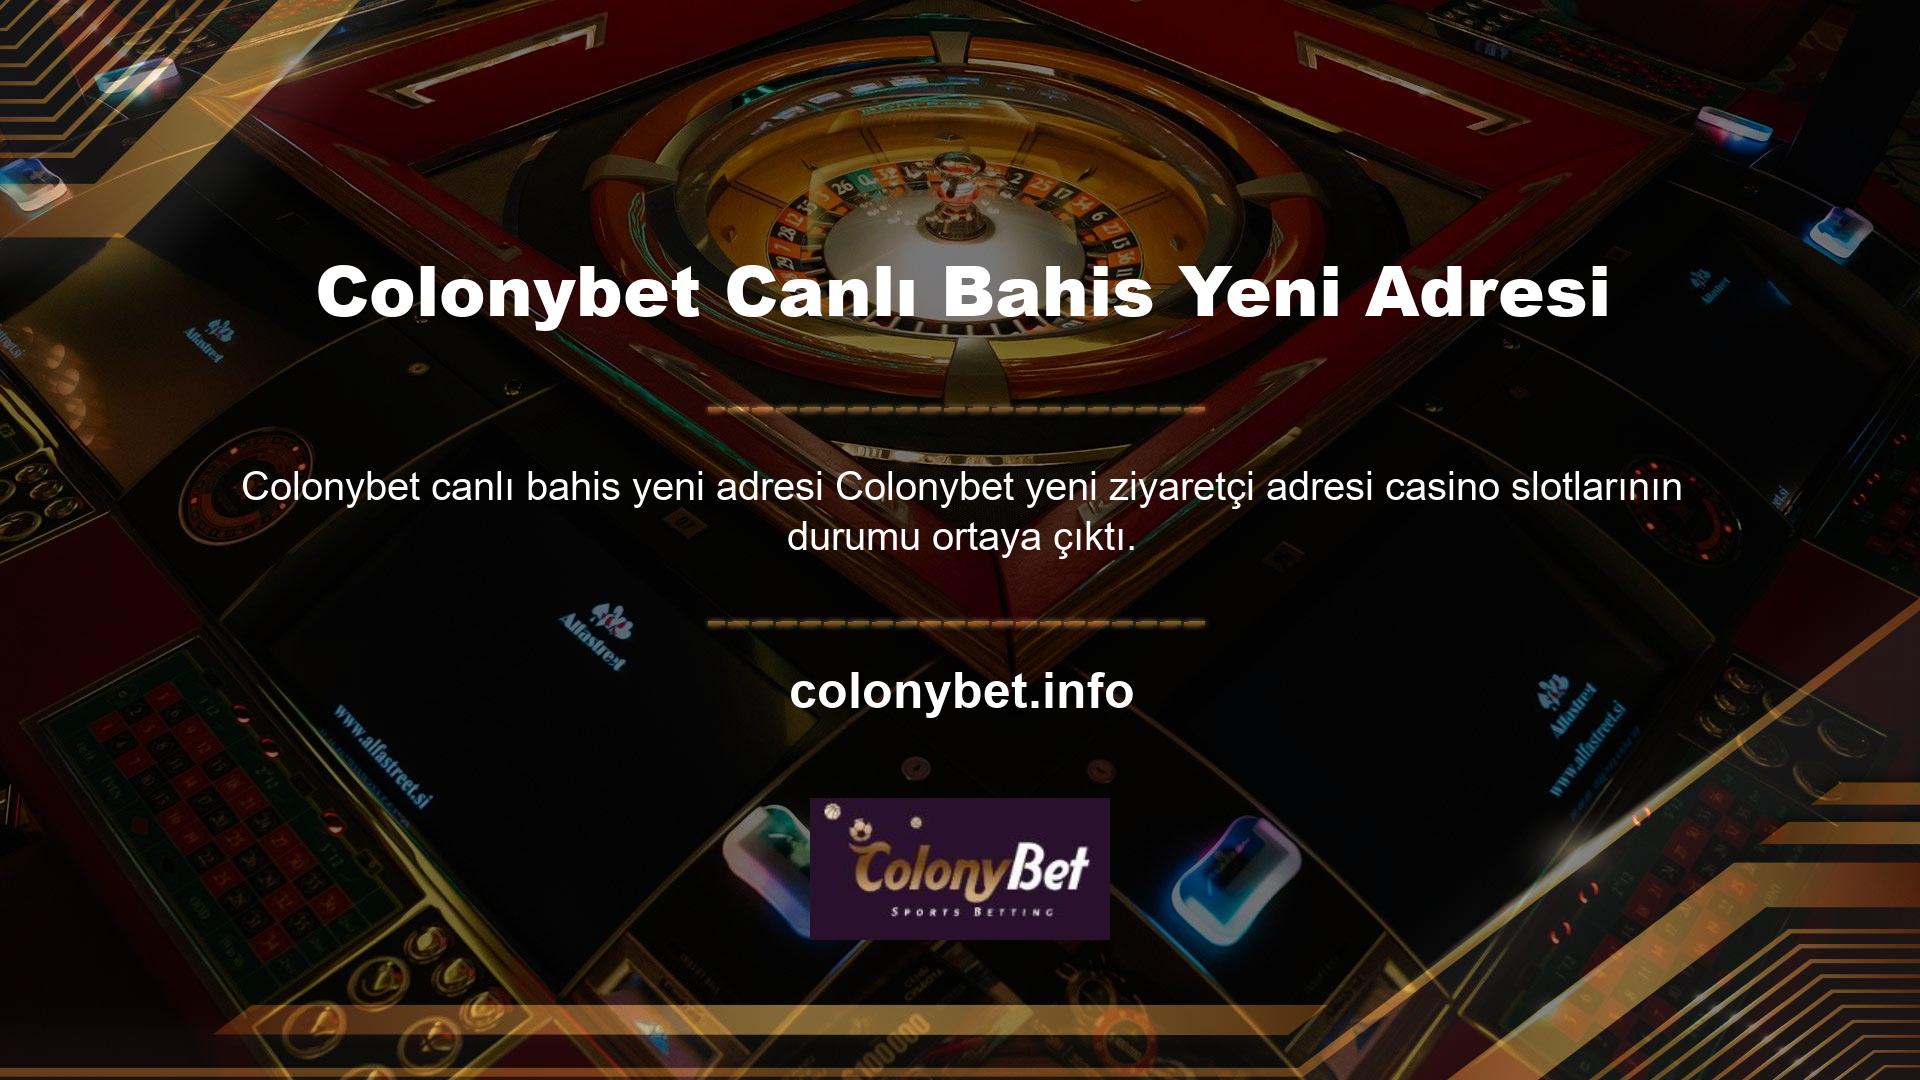 Eğer casino oyunları Türk casino pazarında yıllar içinde iyi bir performans sergiliyorsa, bunun birçok şirketin kârıyla büyük ilgisi var